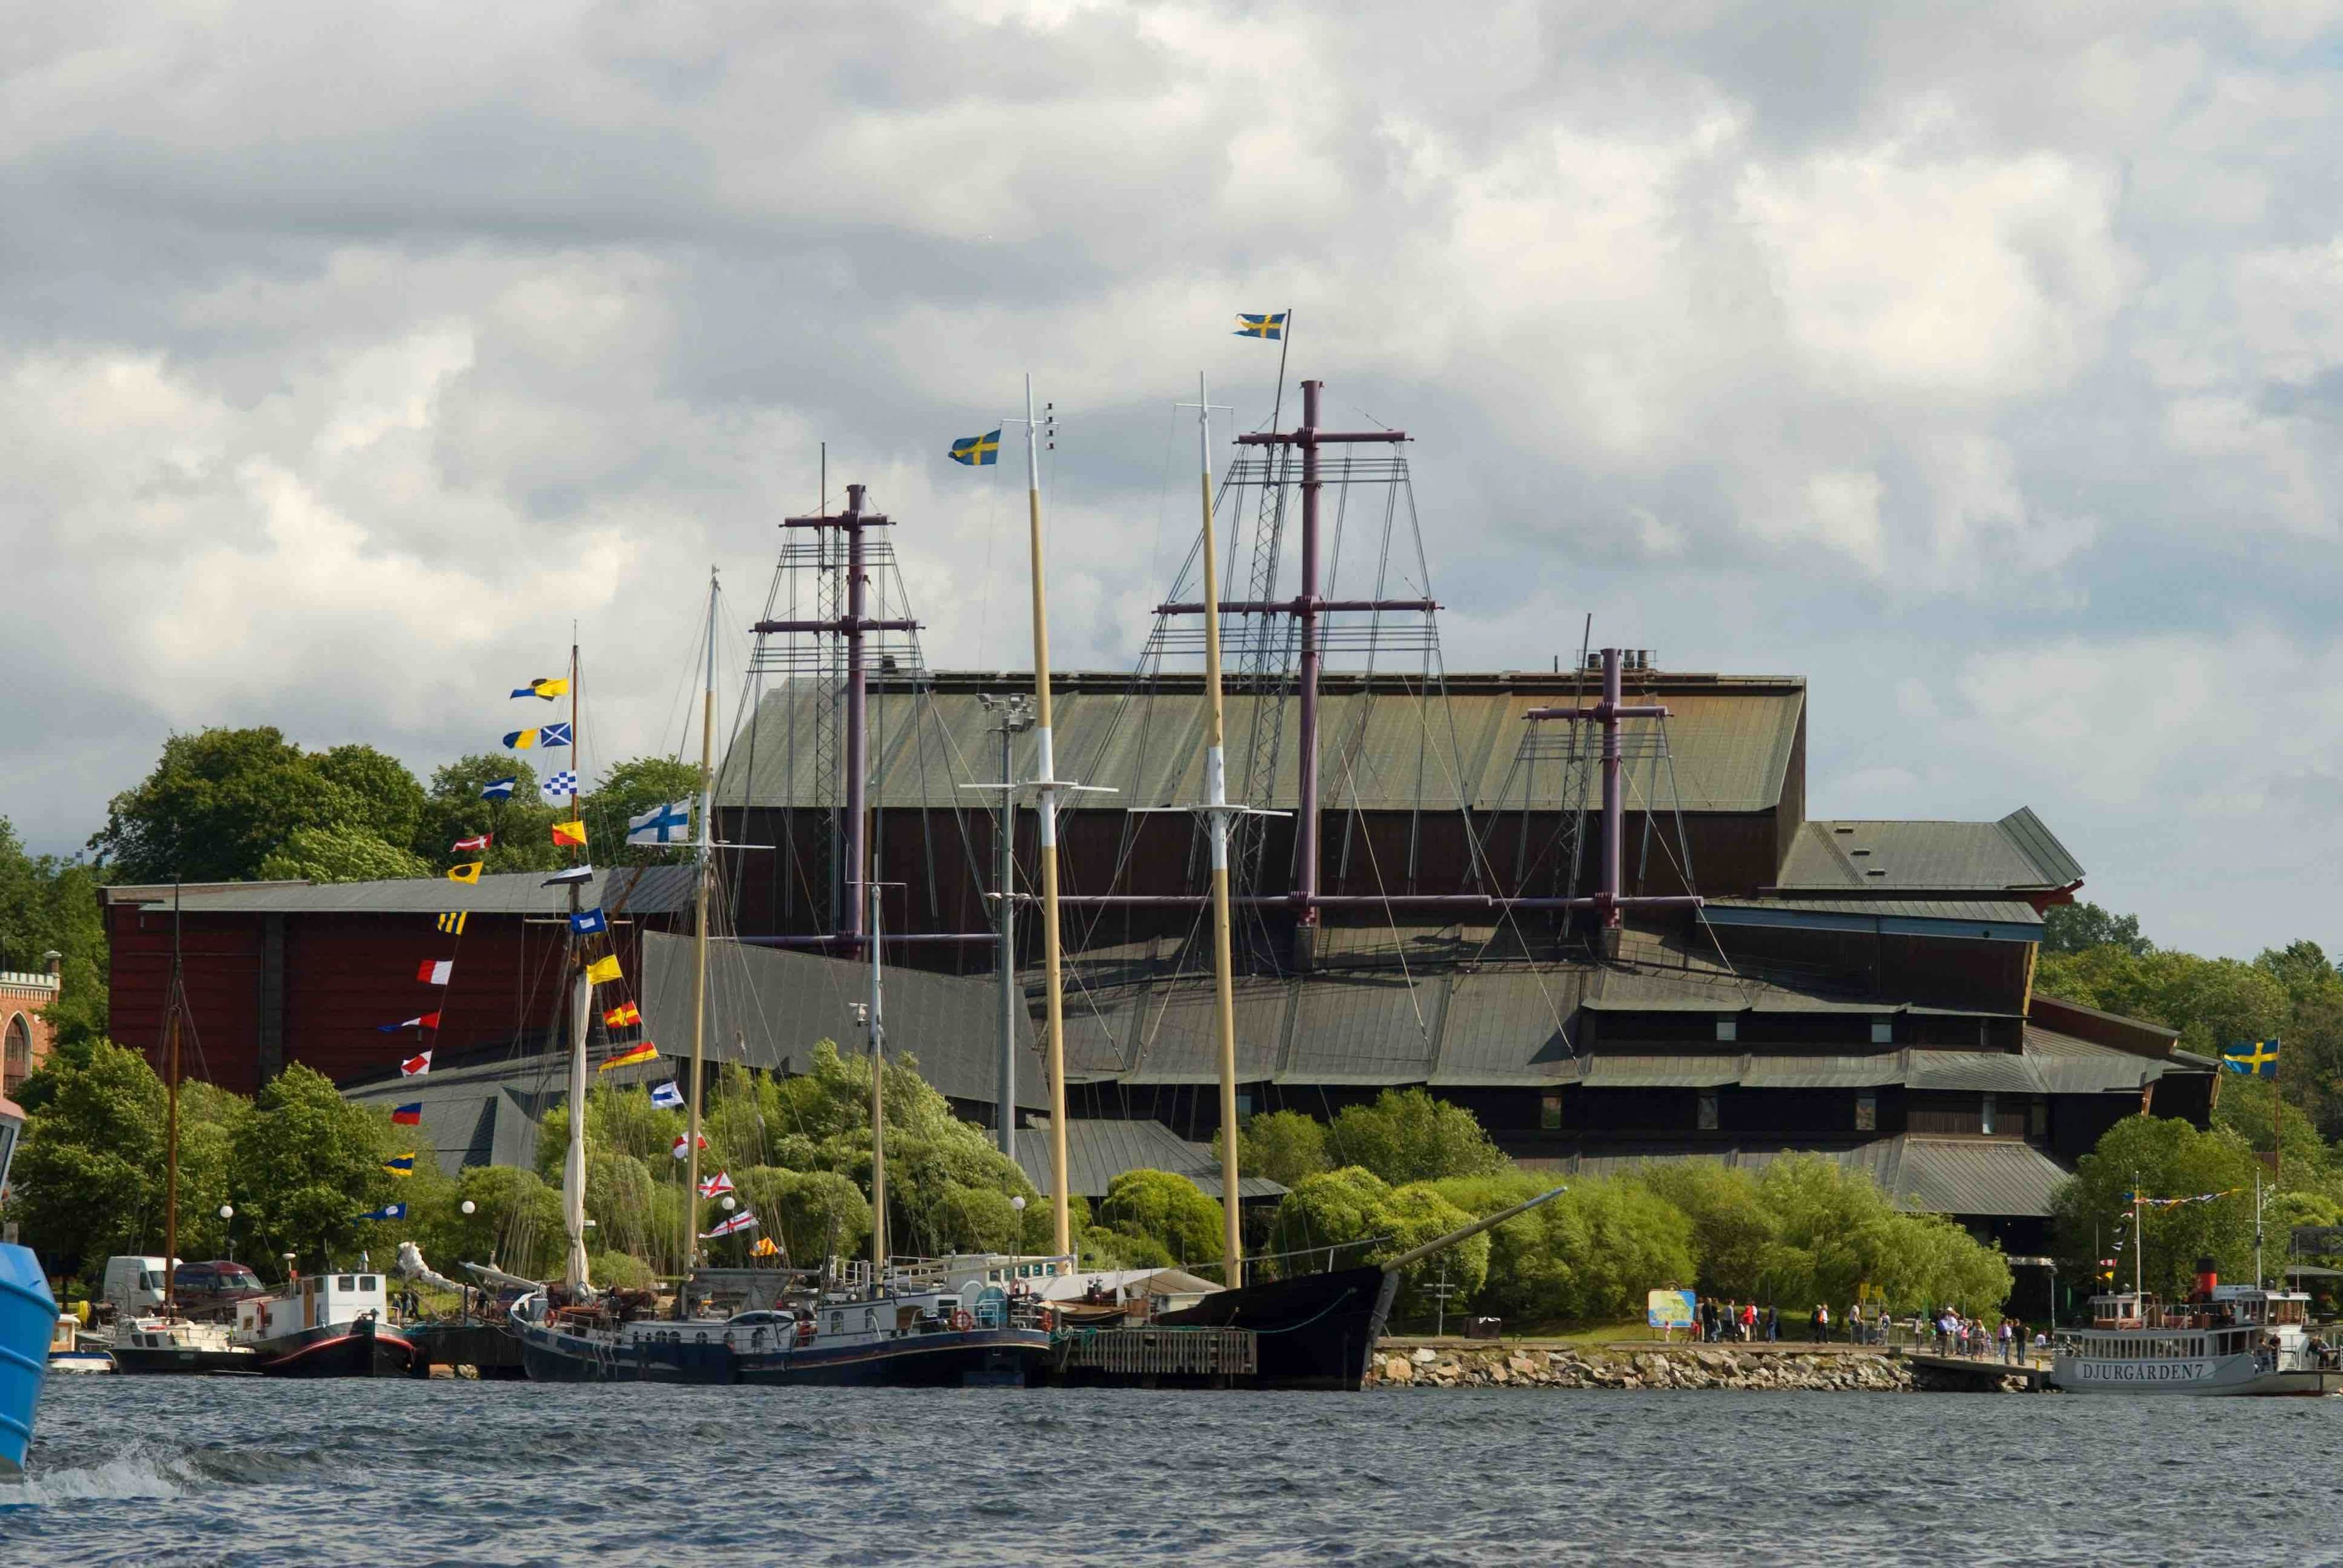 Vasa Museum in Stockholm, Sweden